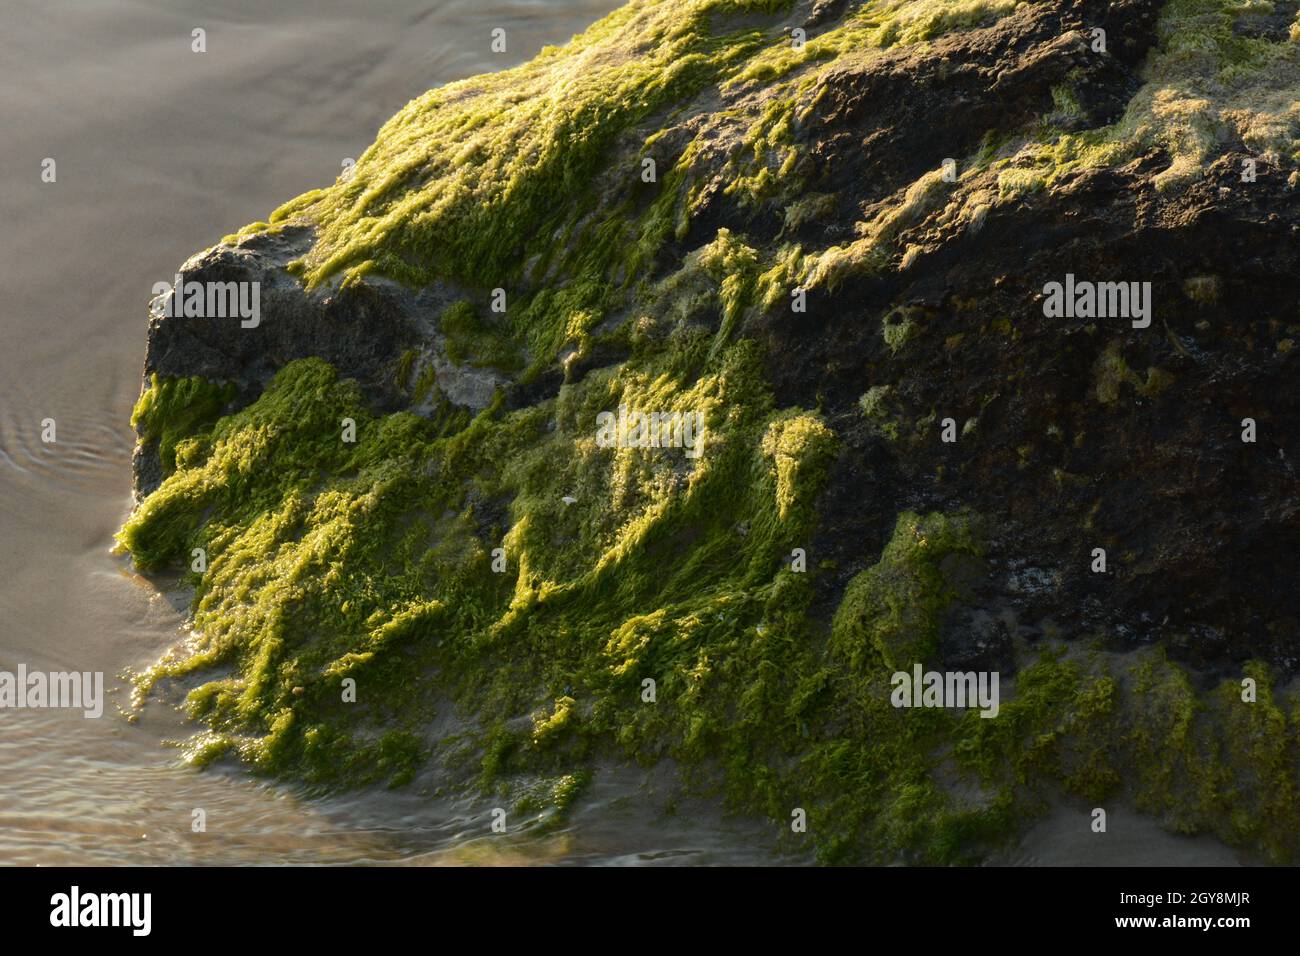 Rochers couverts d'algues vertes sur la plage de la côte de mer. Algues de mer ou mousse verte coincée sur la pierre. Rochers couverts d'algues vertes dans l'eau de mer. Banque D'Images